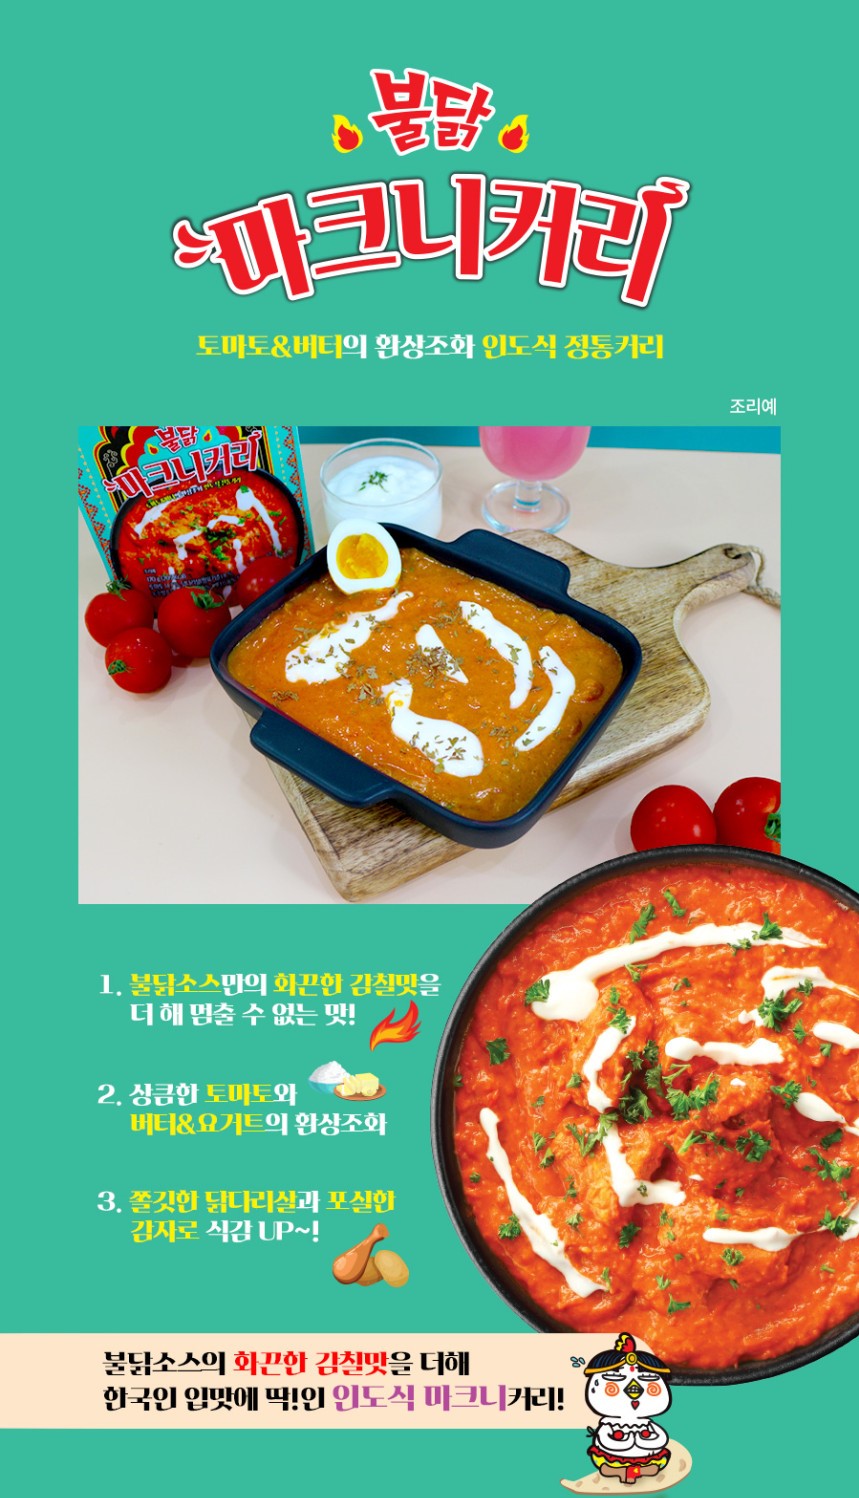 韓國食品-[삼양] 불닭 마크니커리 170g